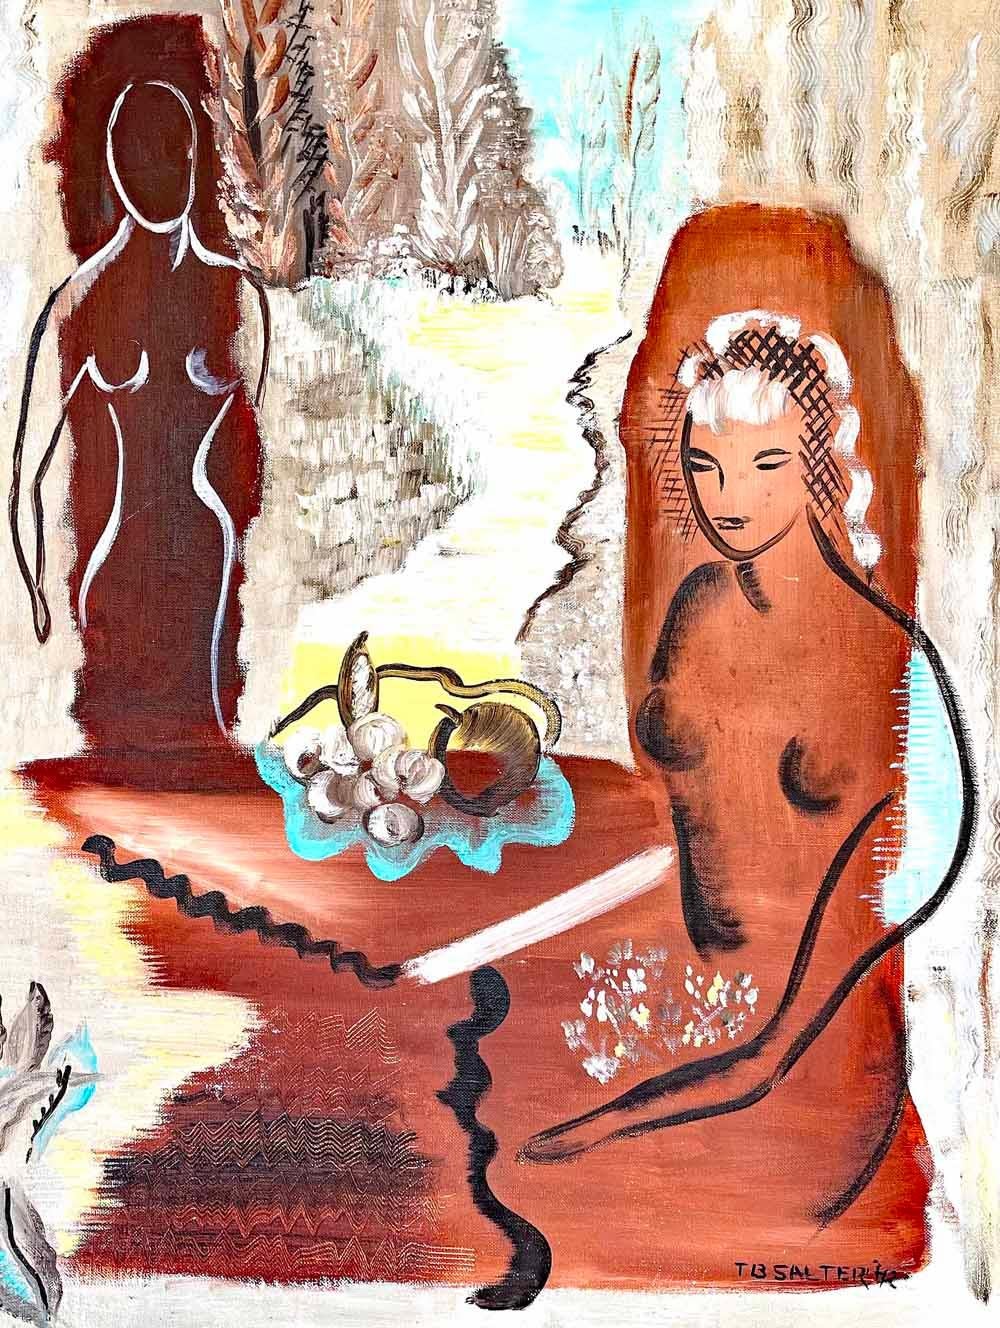 Diese eindrucksvolle Darstellung zweier nackter Frauenfiguren, die um einen Tisch mit einer Schale Obst sitzen, wurde 1942 von Thelma Salter gemalt und ist eindeutig von Raoul Dufy, Marie Laurencin und Hollywoods Bühnenbildern beeinflusst.  Sowohl